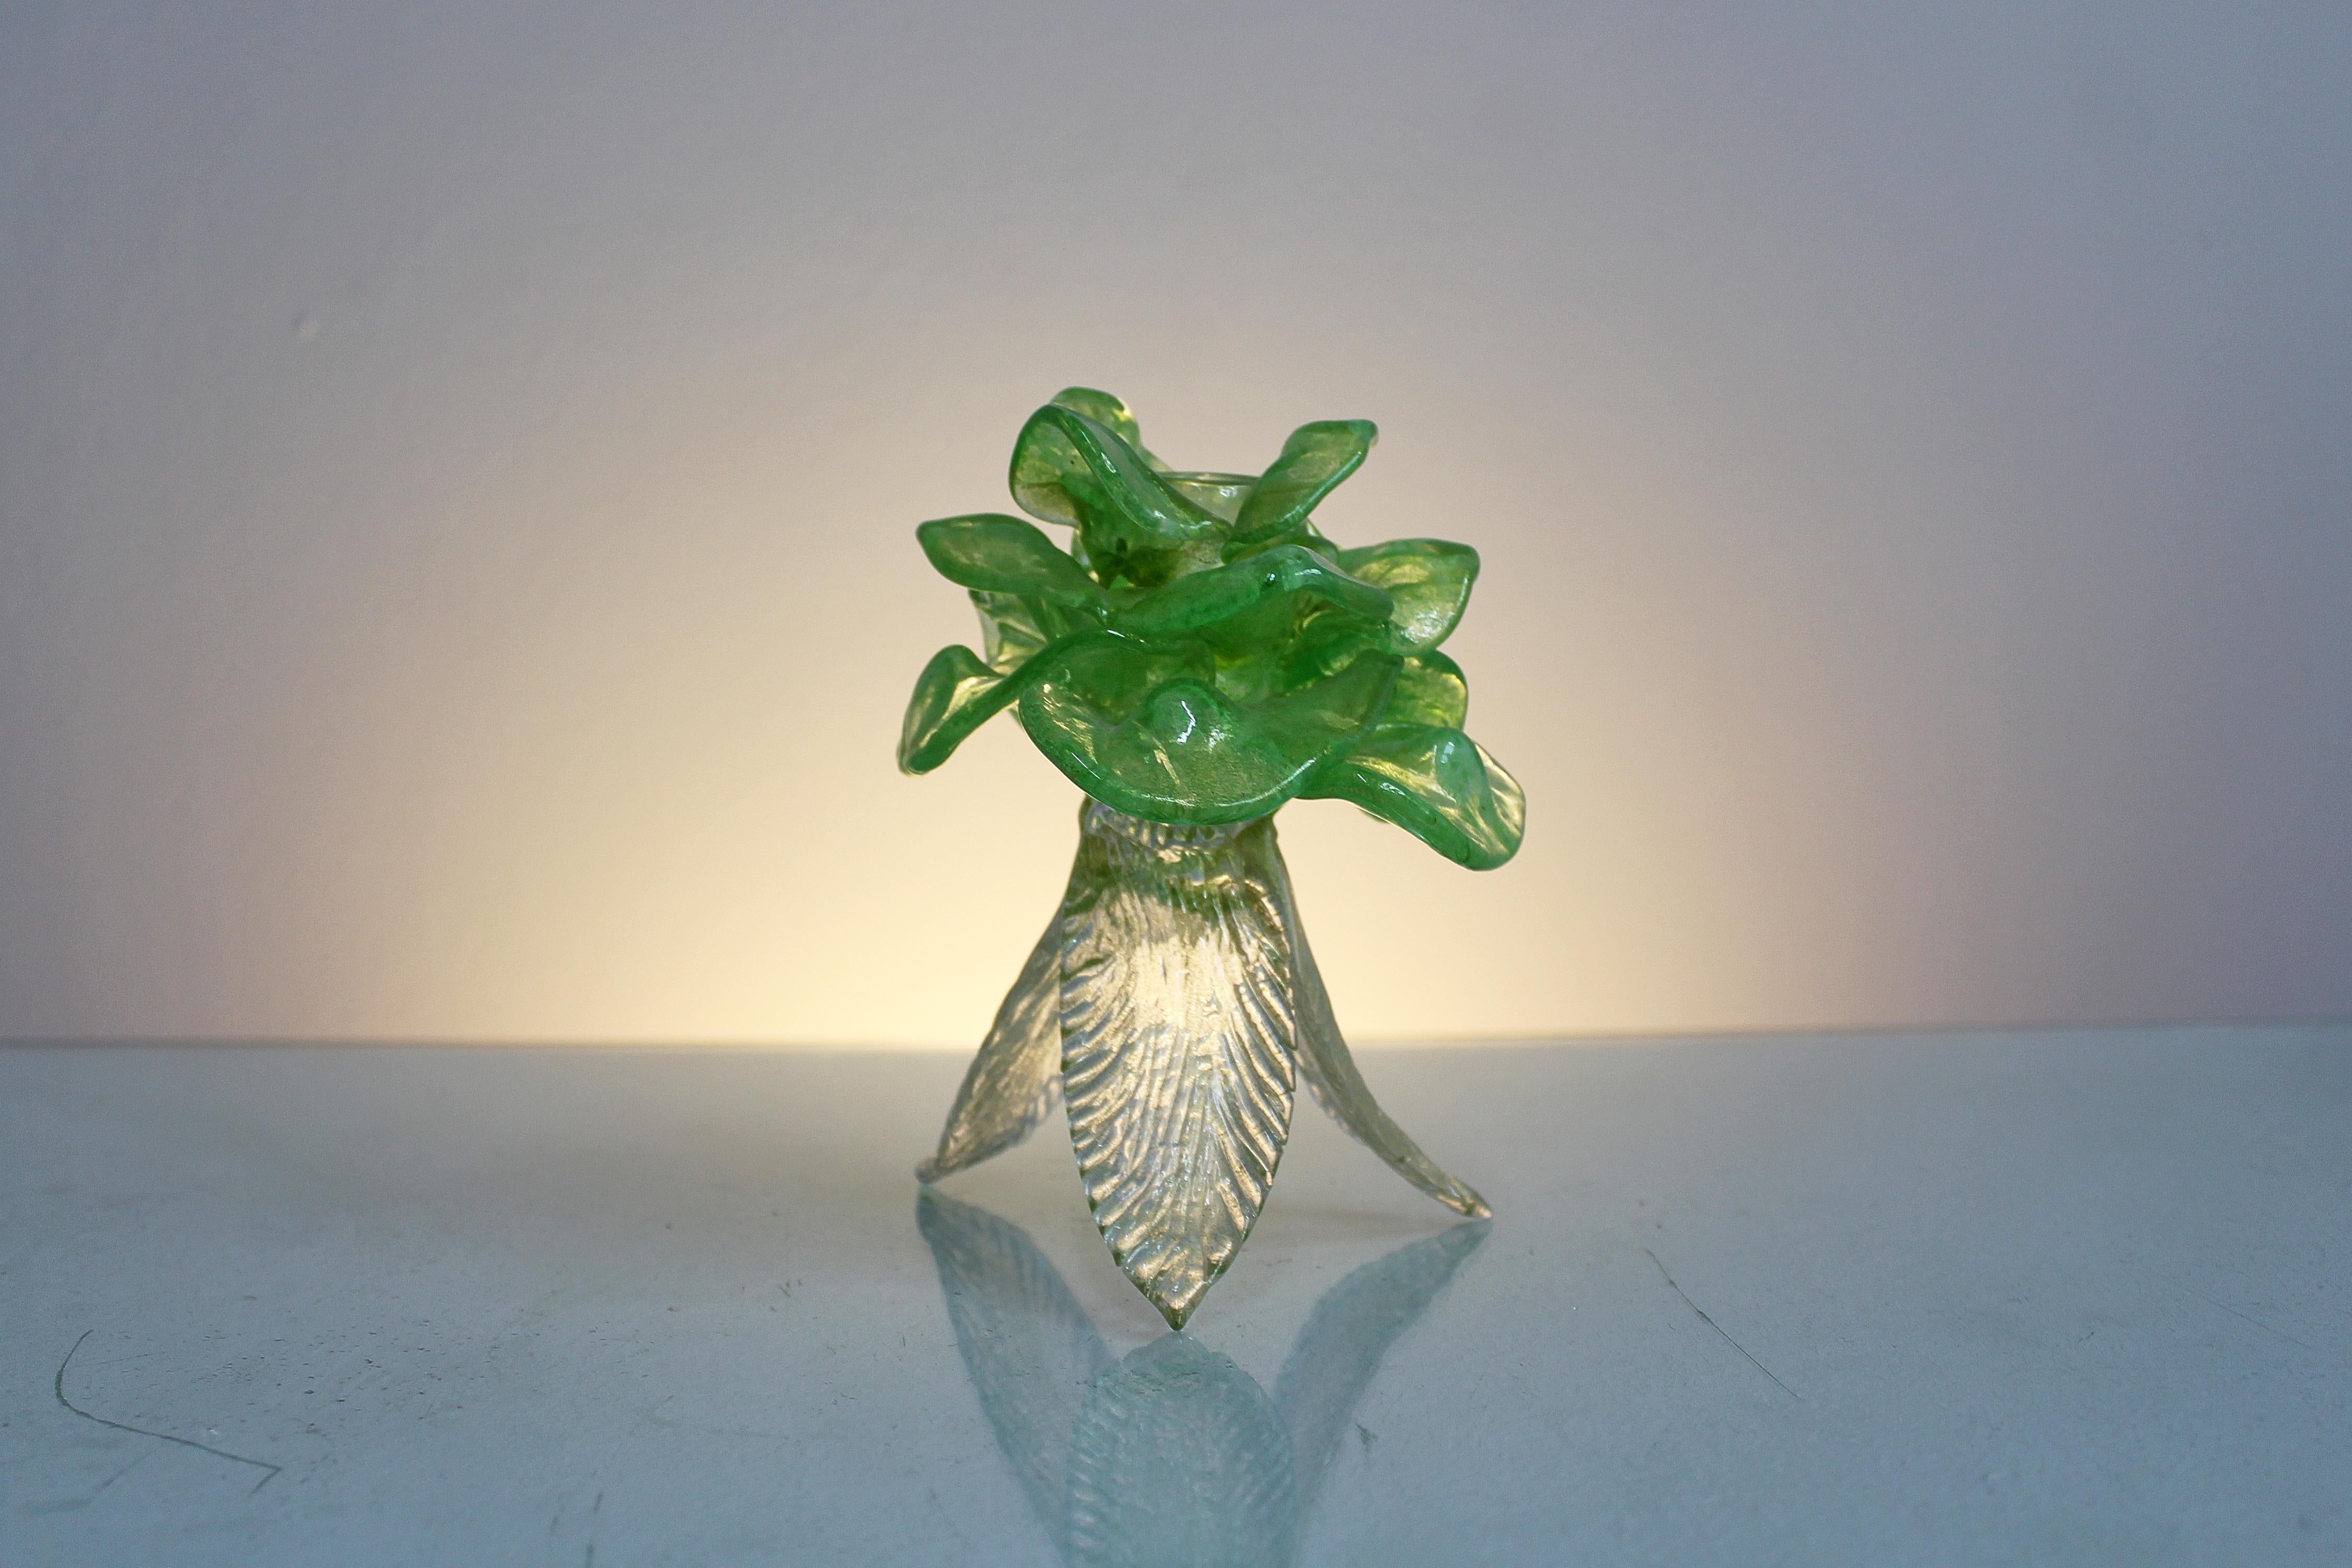 Sehr feiner Murano-Glas-Kerzenhalter mit grünen Blättern oben und transparent unten, alle mit Einschlüssen von Blattgold. Venezianische Manufaktur, die Barovier in den 1950er Jahren zugeschrieben wird.
Alters- und gebrauchsbedingte